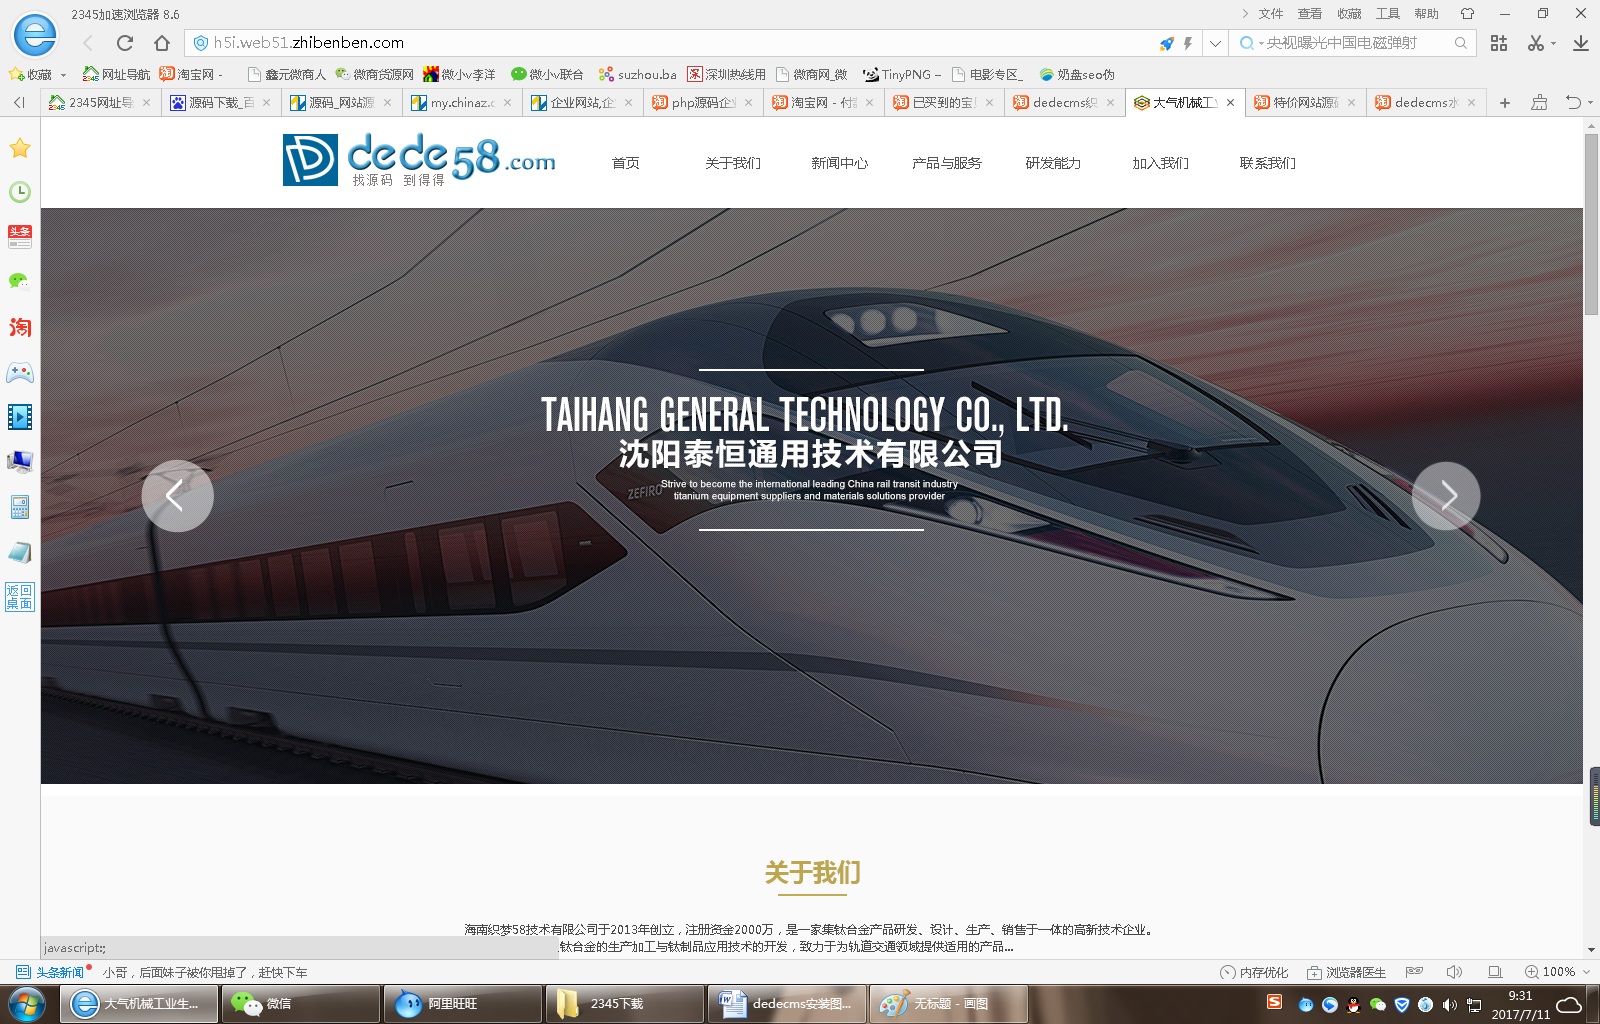 【首发】html5大气机械工业生产类企业网站织梦模板